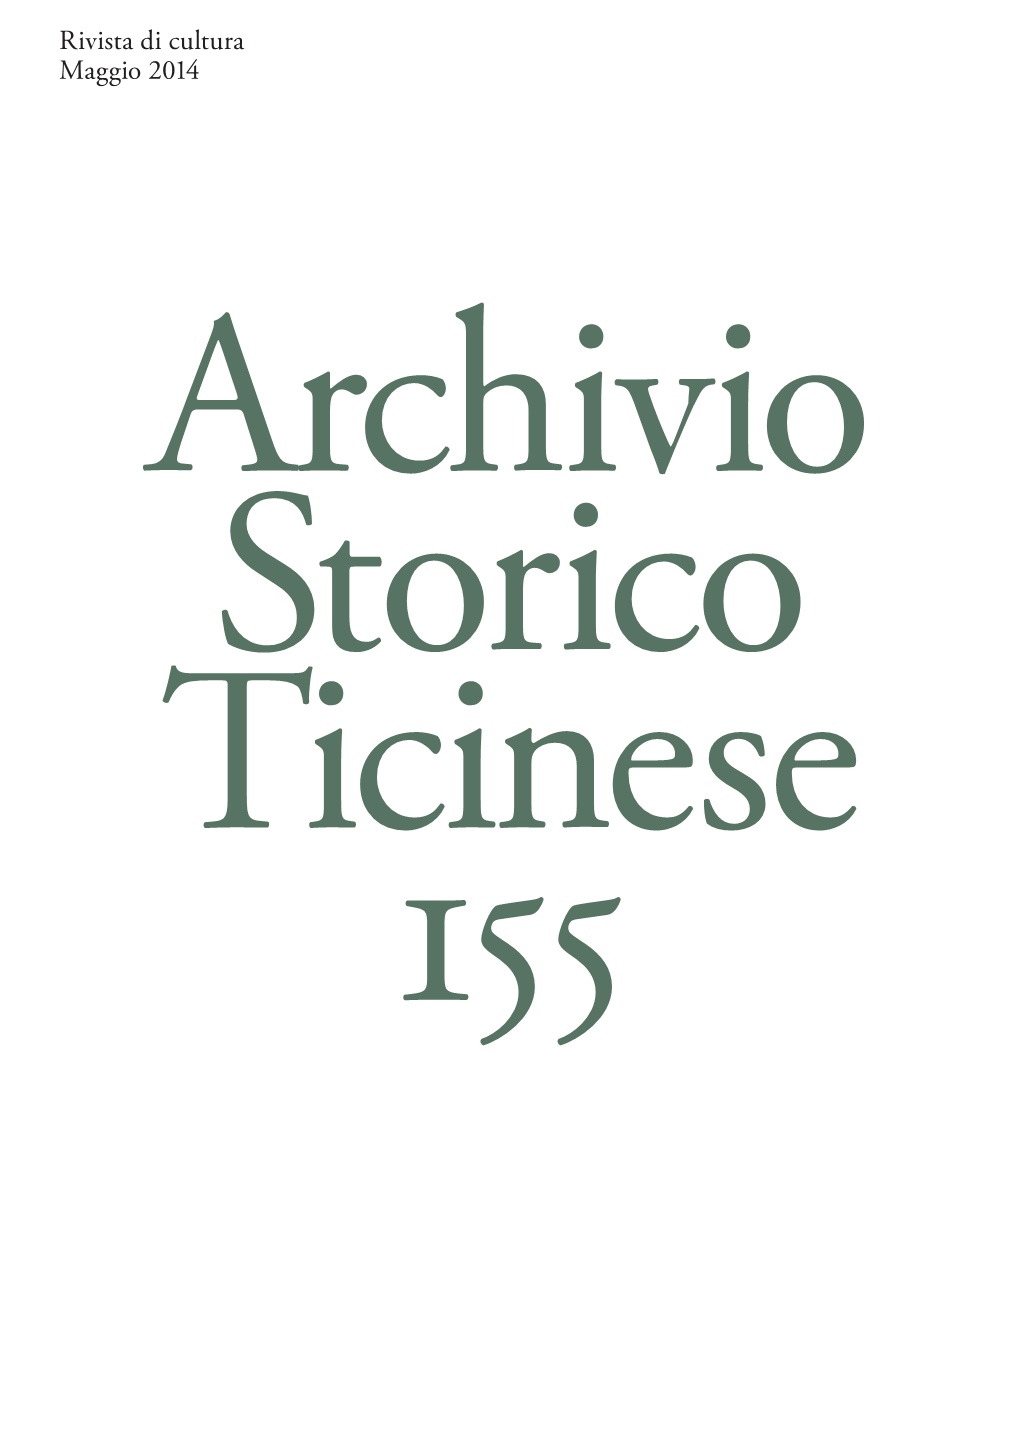 Rivista Di Cultura Maggio 2014 Archivio Storico Ticinese 155 38 AST 155